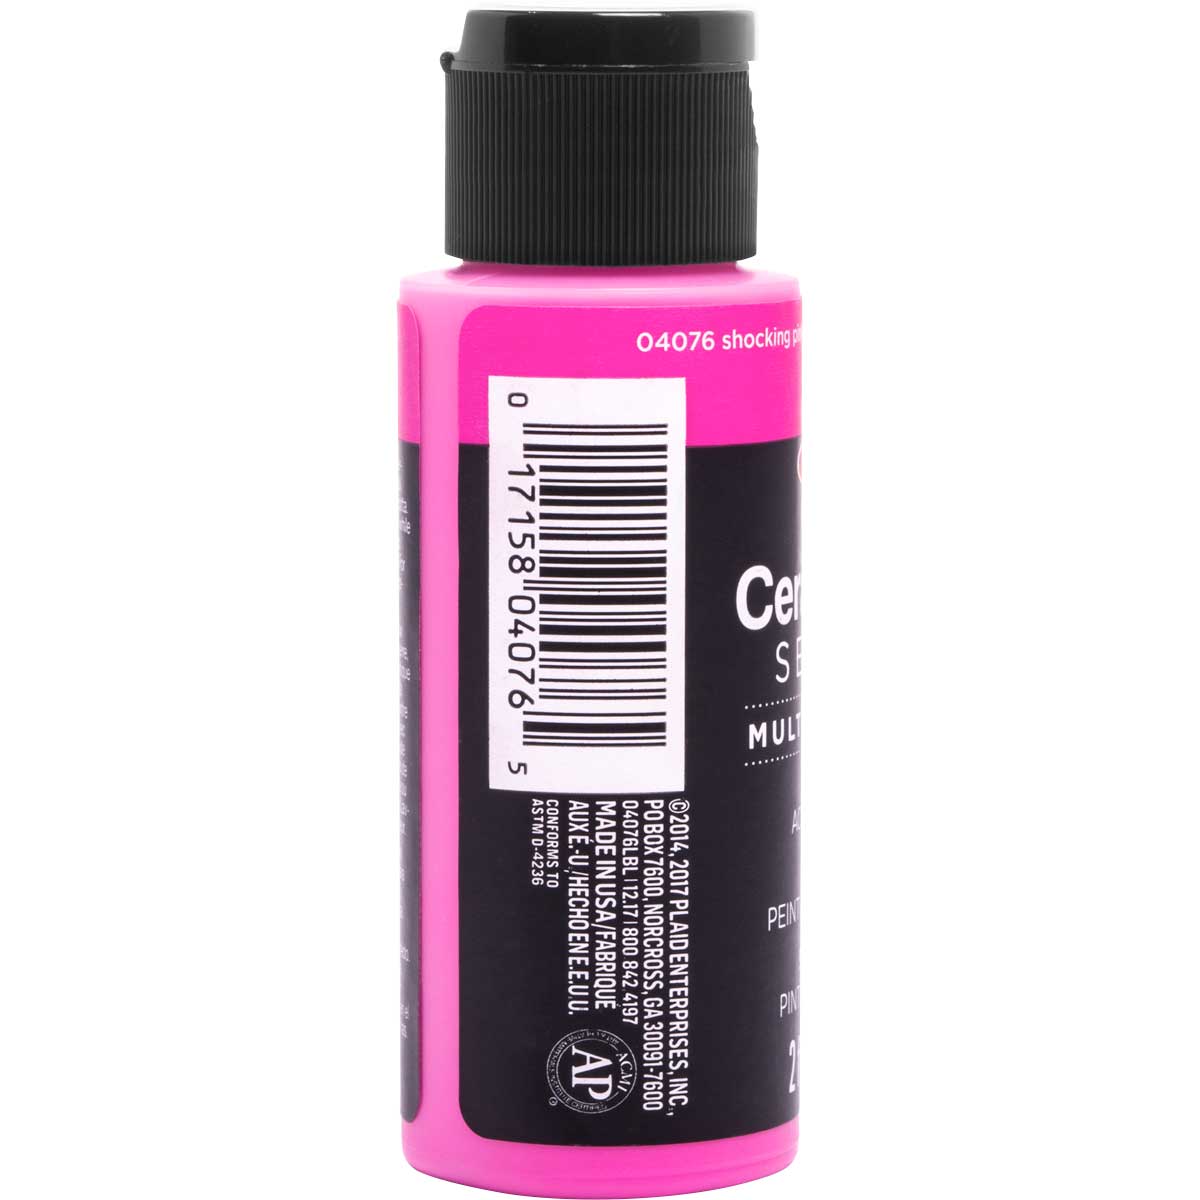 Delta Ceramcoat ® Select Multi-Surface Acrylic Paint - Satin - Shocking Pink, 2 oz. - 04076